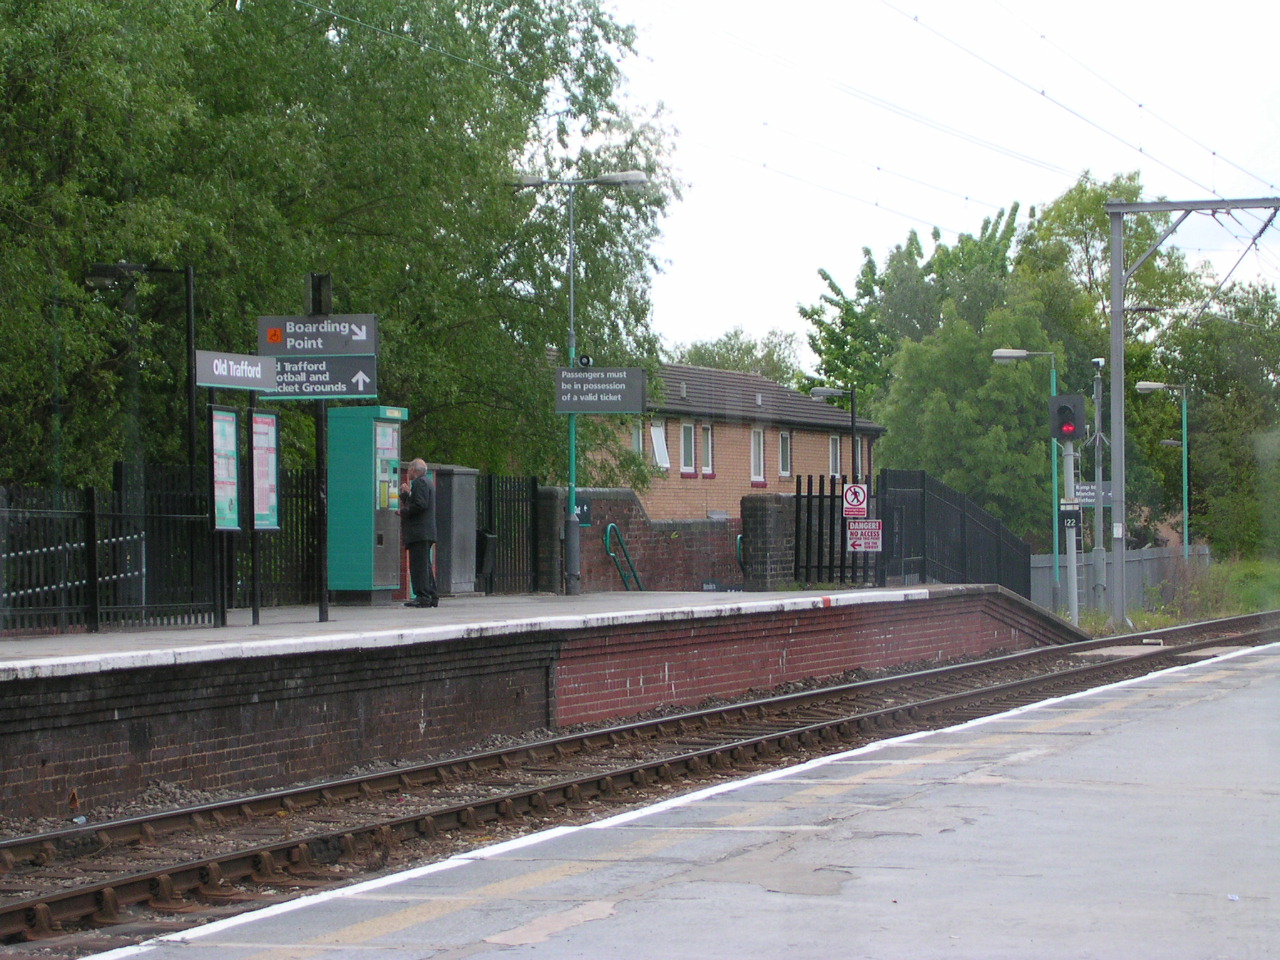 Old Trafford Metrolink station